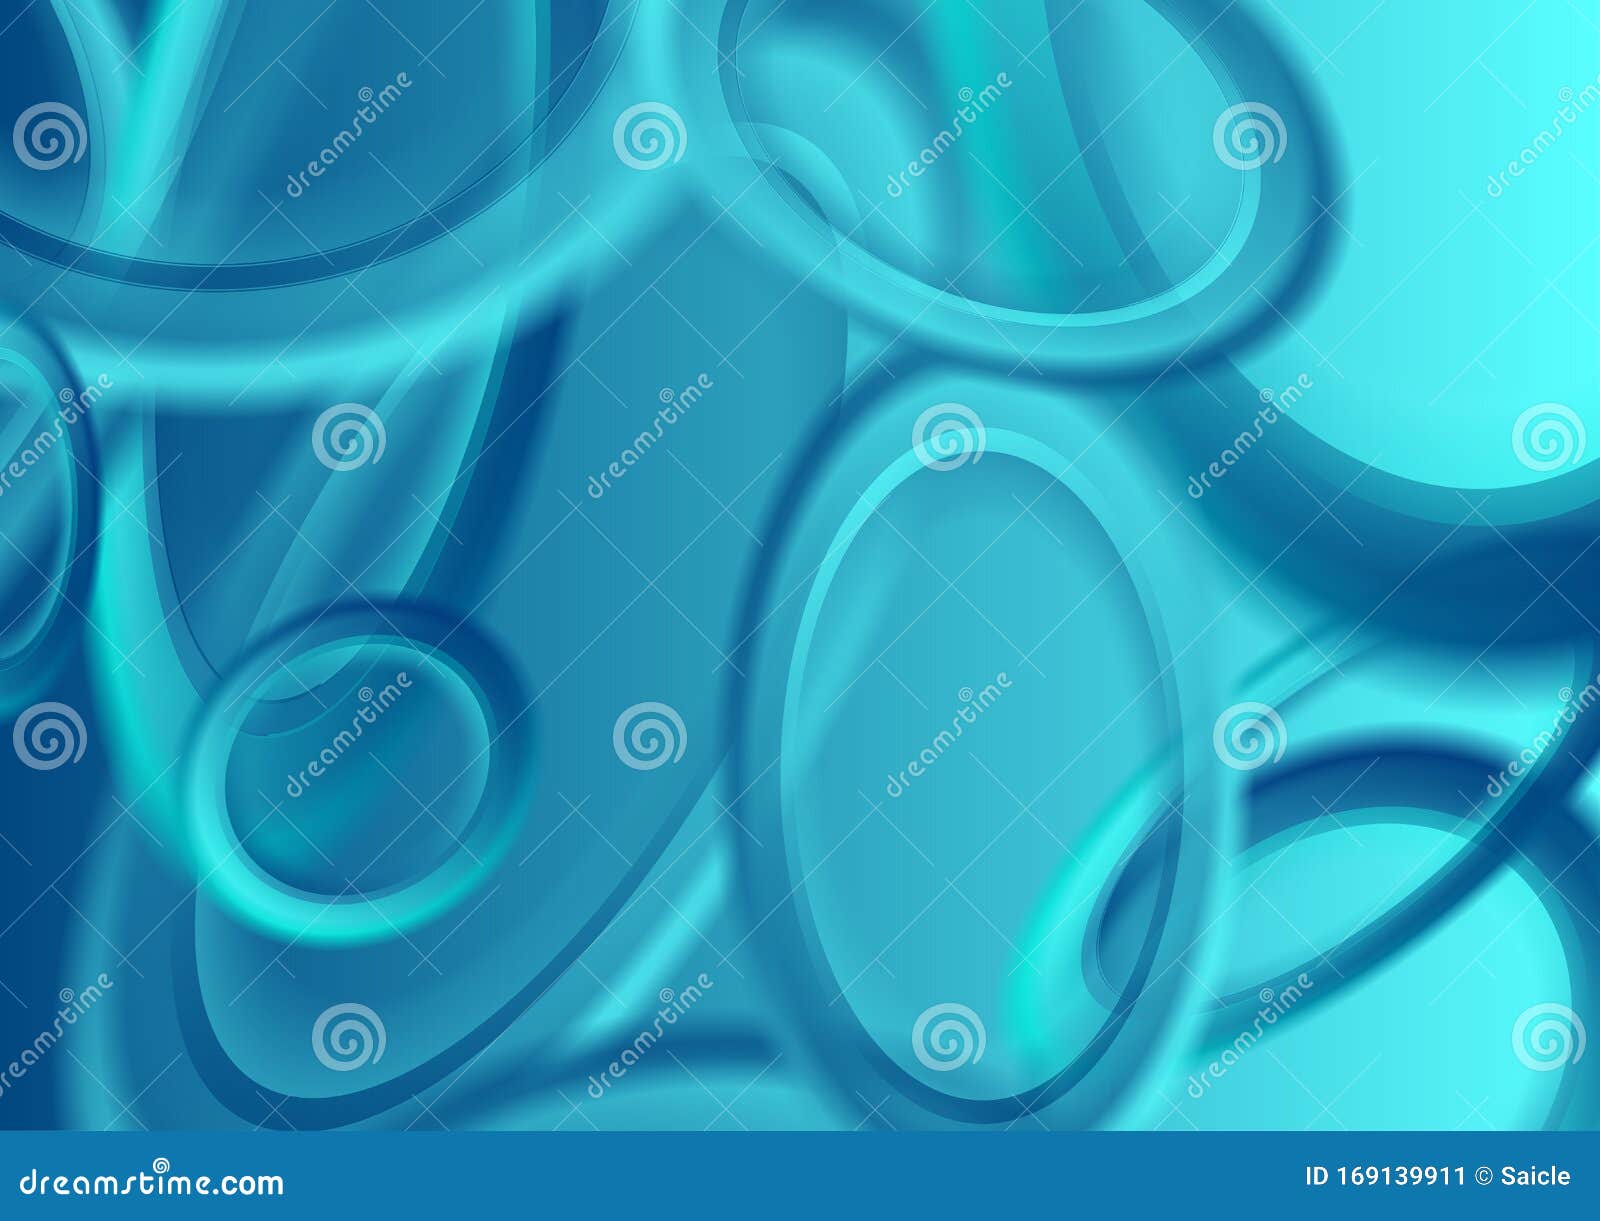 带椭圆的抽象青色背景向量例证 插画包括有抽象 现代 蠢材 几何 圈子 椭圆 数字式